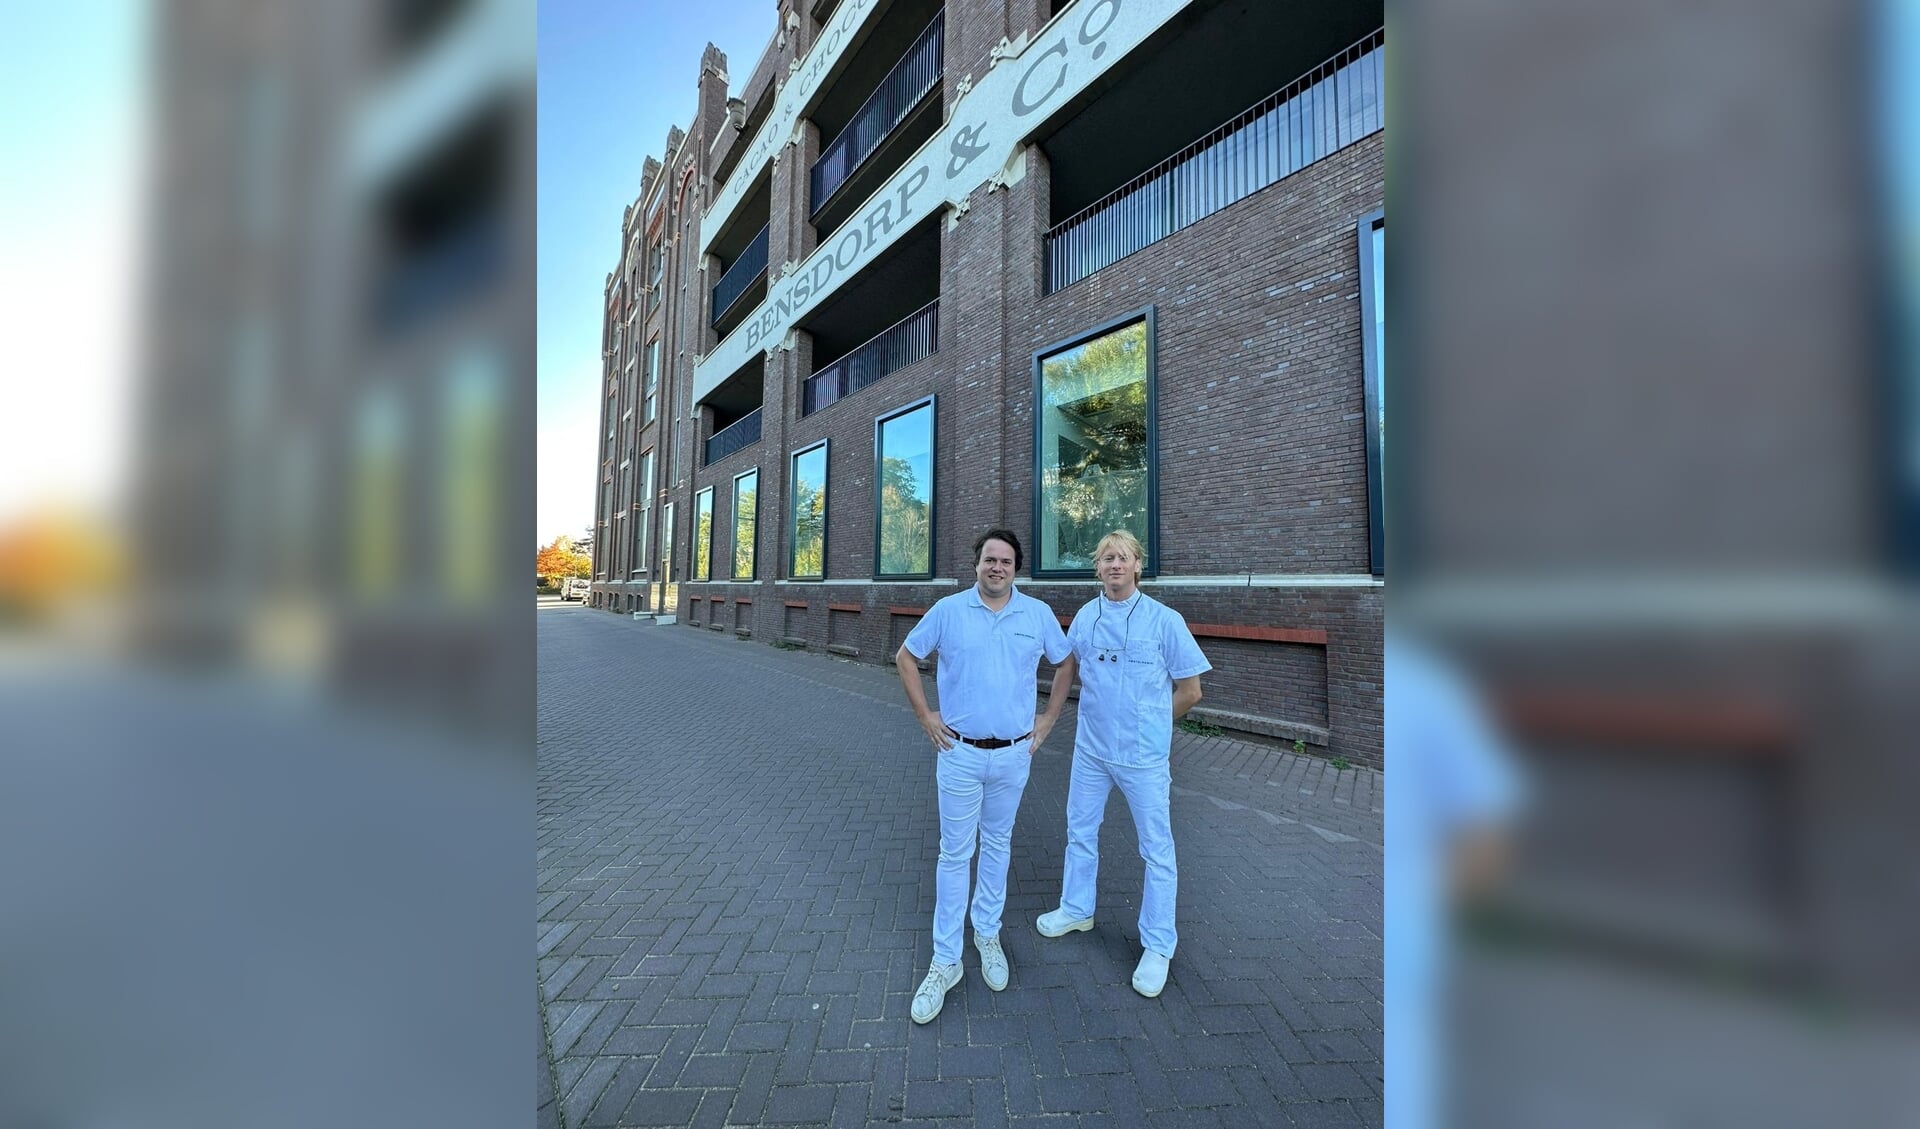 De tandartsen van Amstel Dental voor het pand in Bussum.